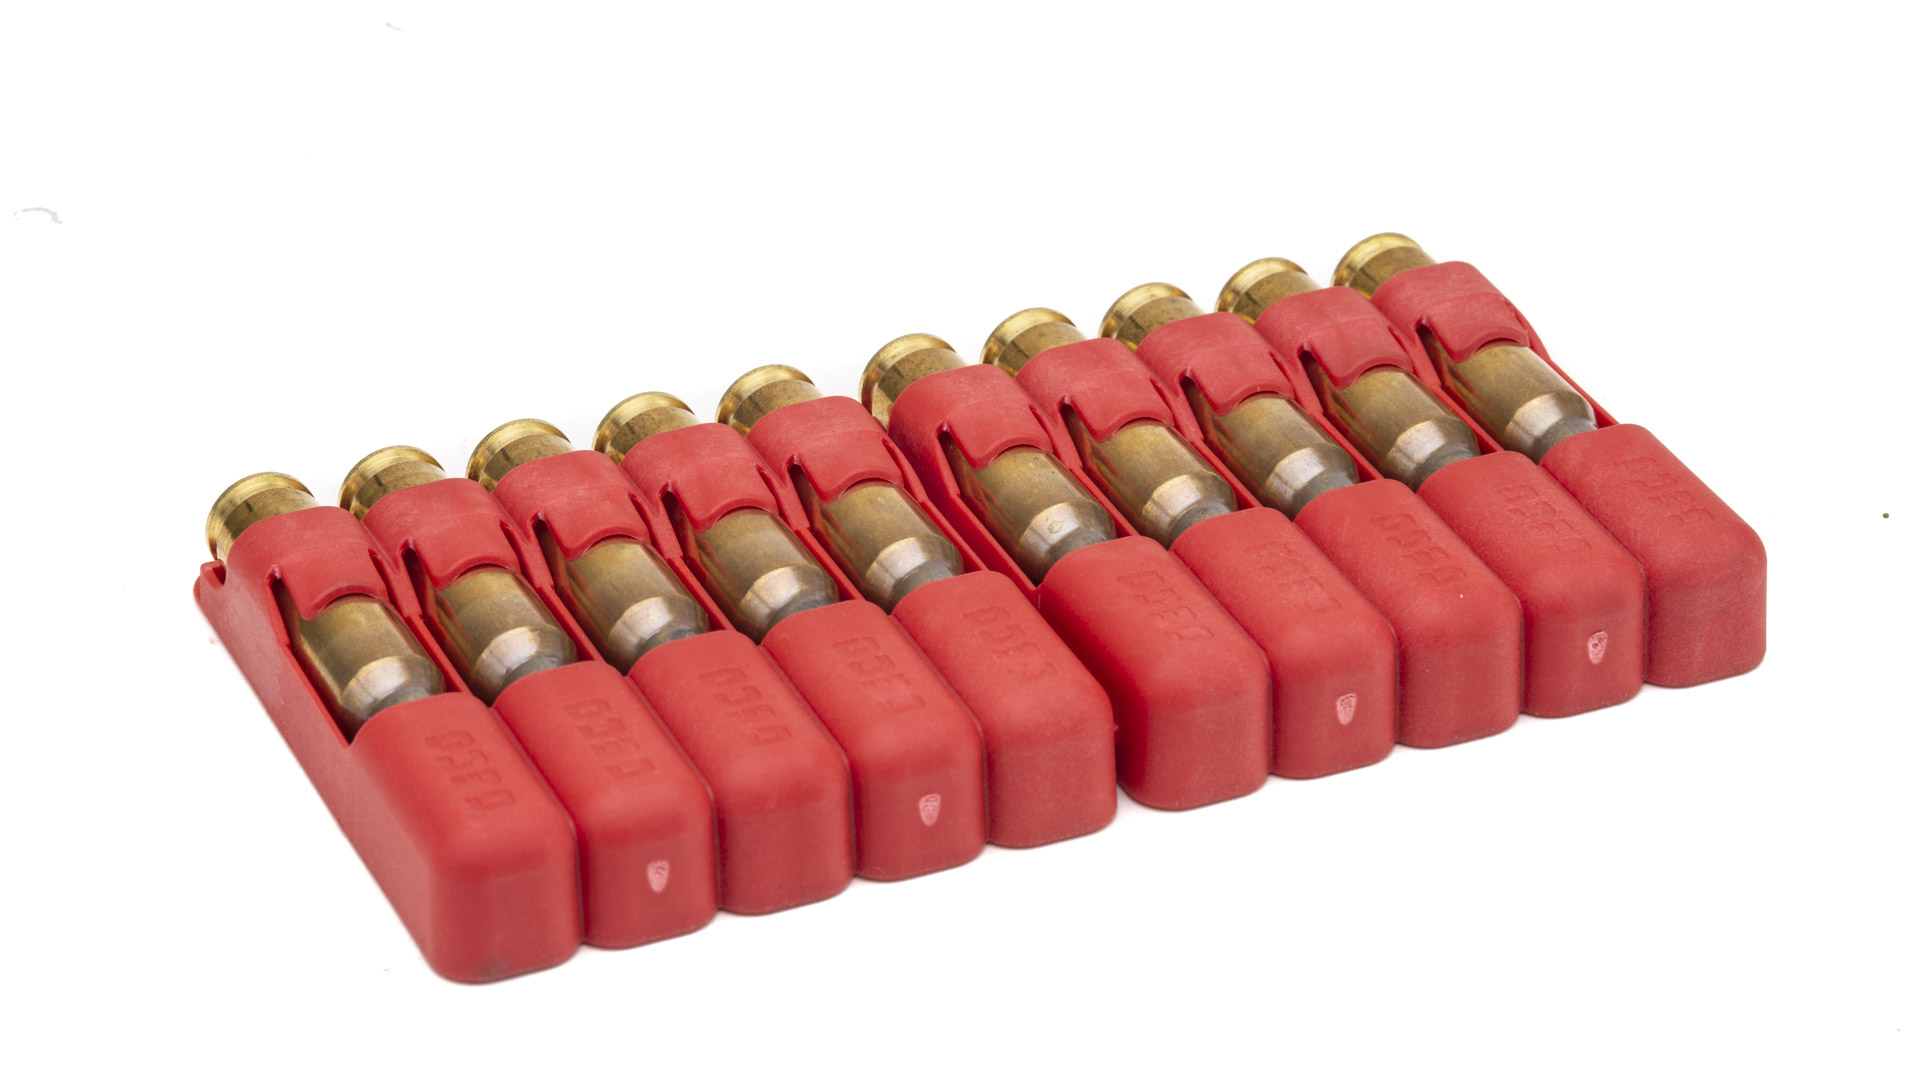 Le munizioni sono protette da appositi contenitori in materiale plastico che possono essere utilizzati come esca per l'accensione di un fuoco 